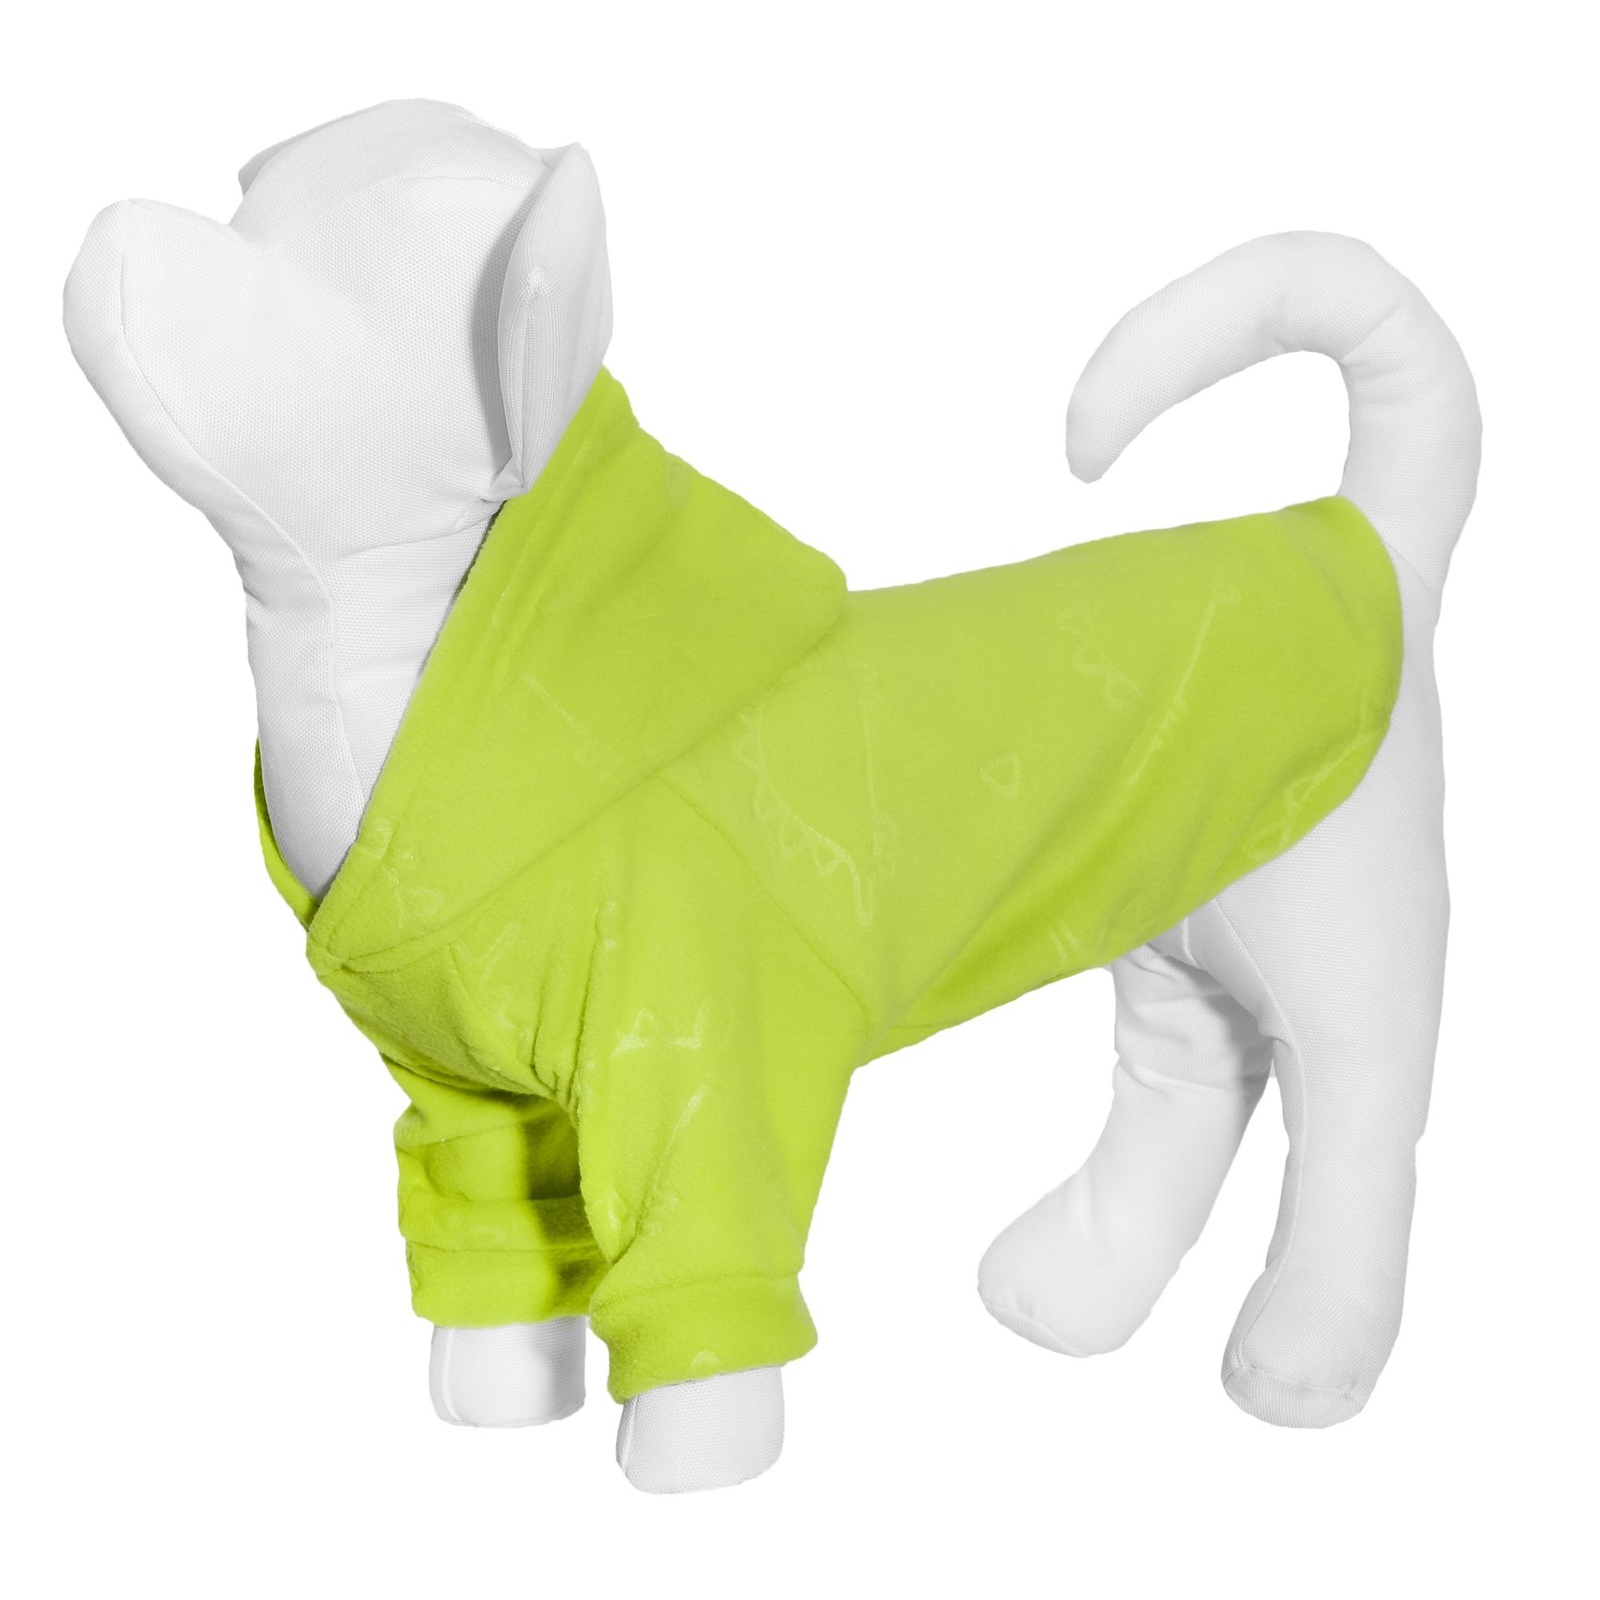 Yami-Yami одежда Yami-Yami одежда толстовка для собаки из флиса с принтом Динозавры, салатовая (XL)